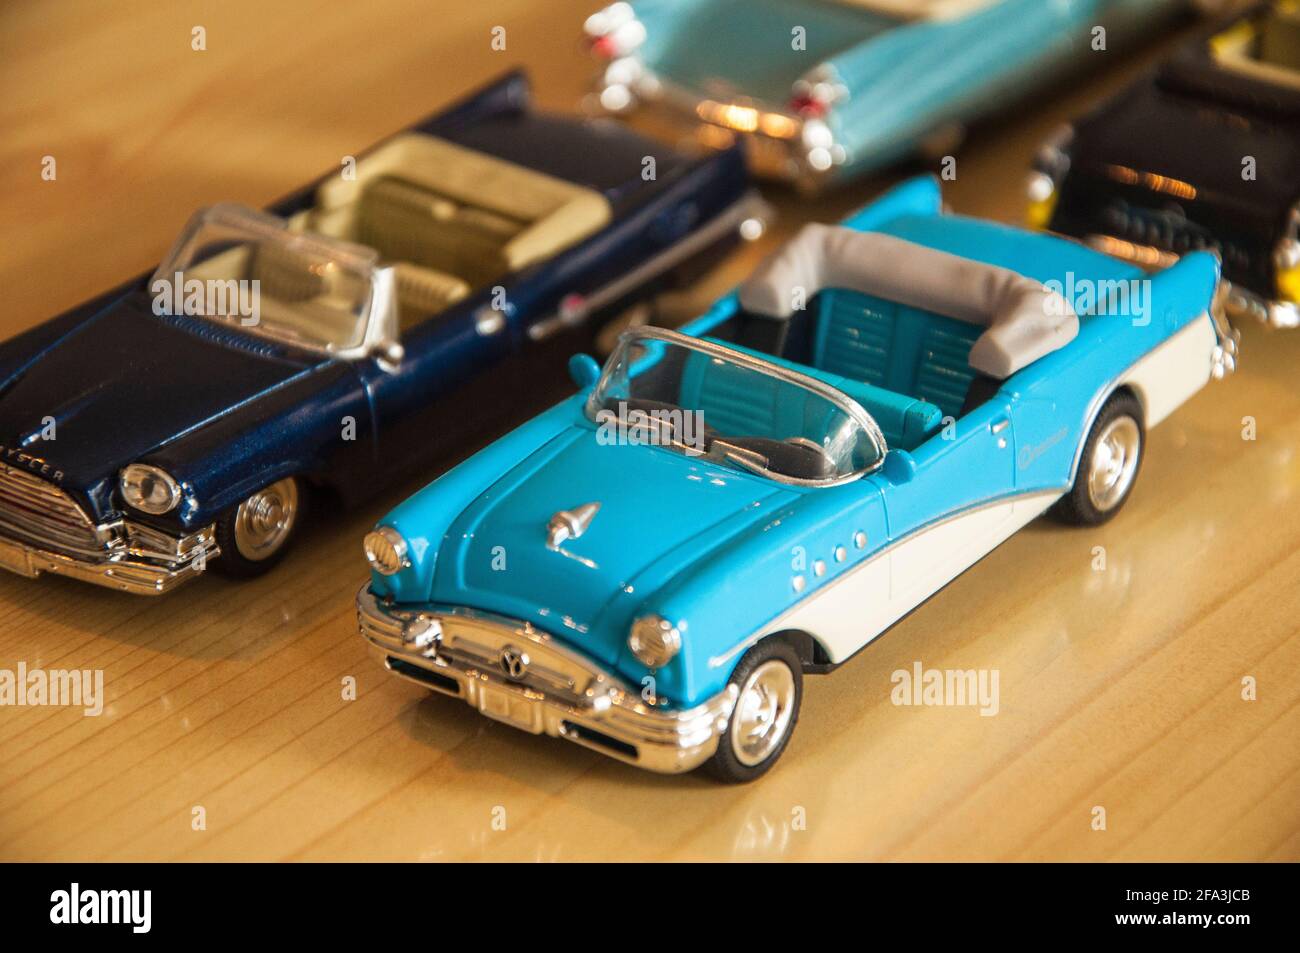 Parecen Los Coches Reales Vehículos Modelo Clásicos O Vehículos Del Juguete Colección  Miniatura De Automóviles Modelos Retros Del Imagen de archivo - Imagen de  mini, recorrido: 135554565